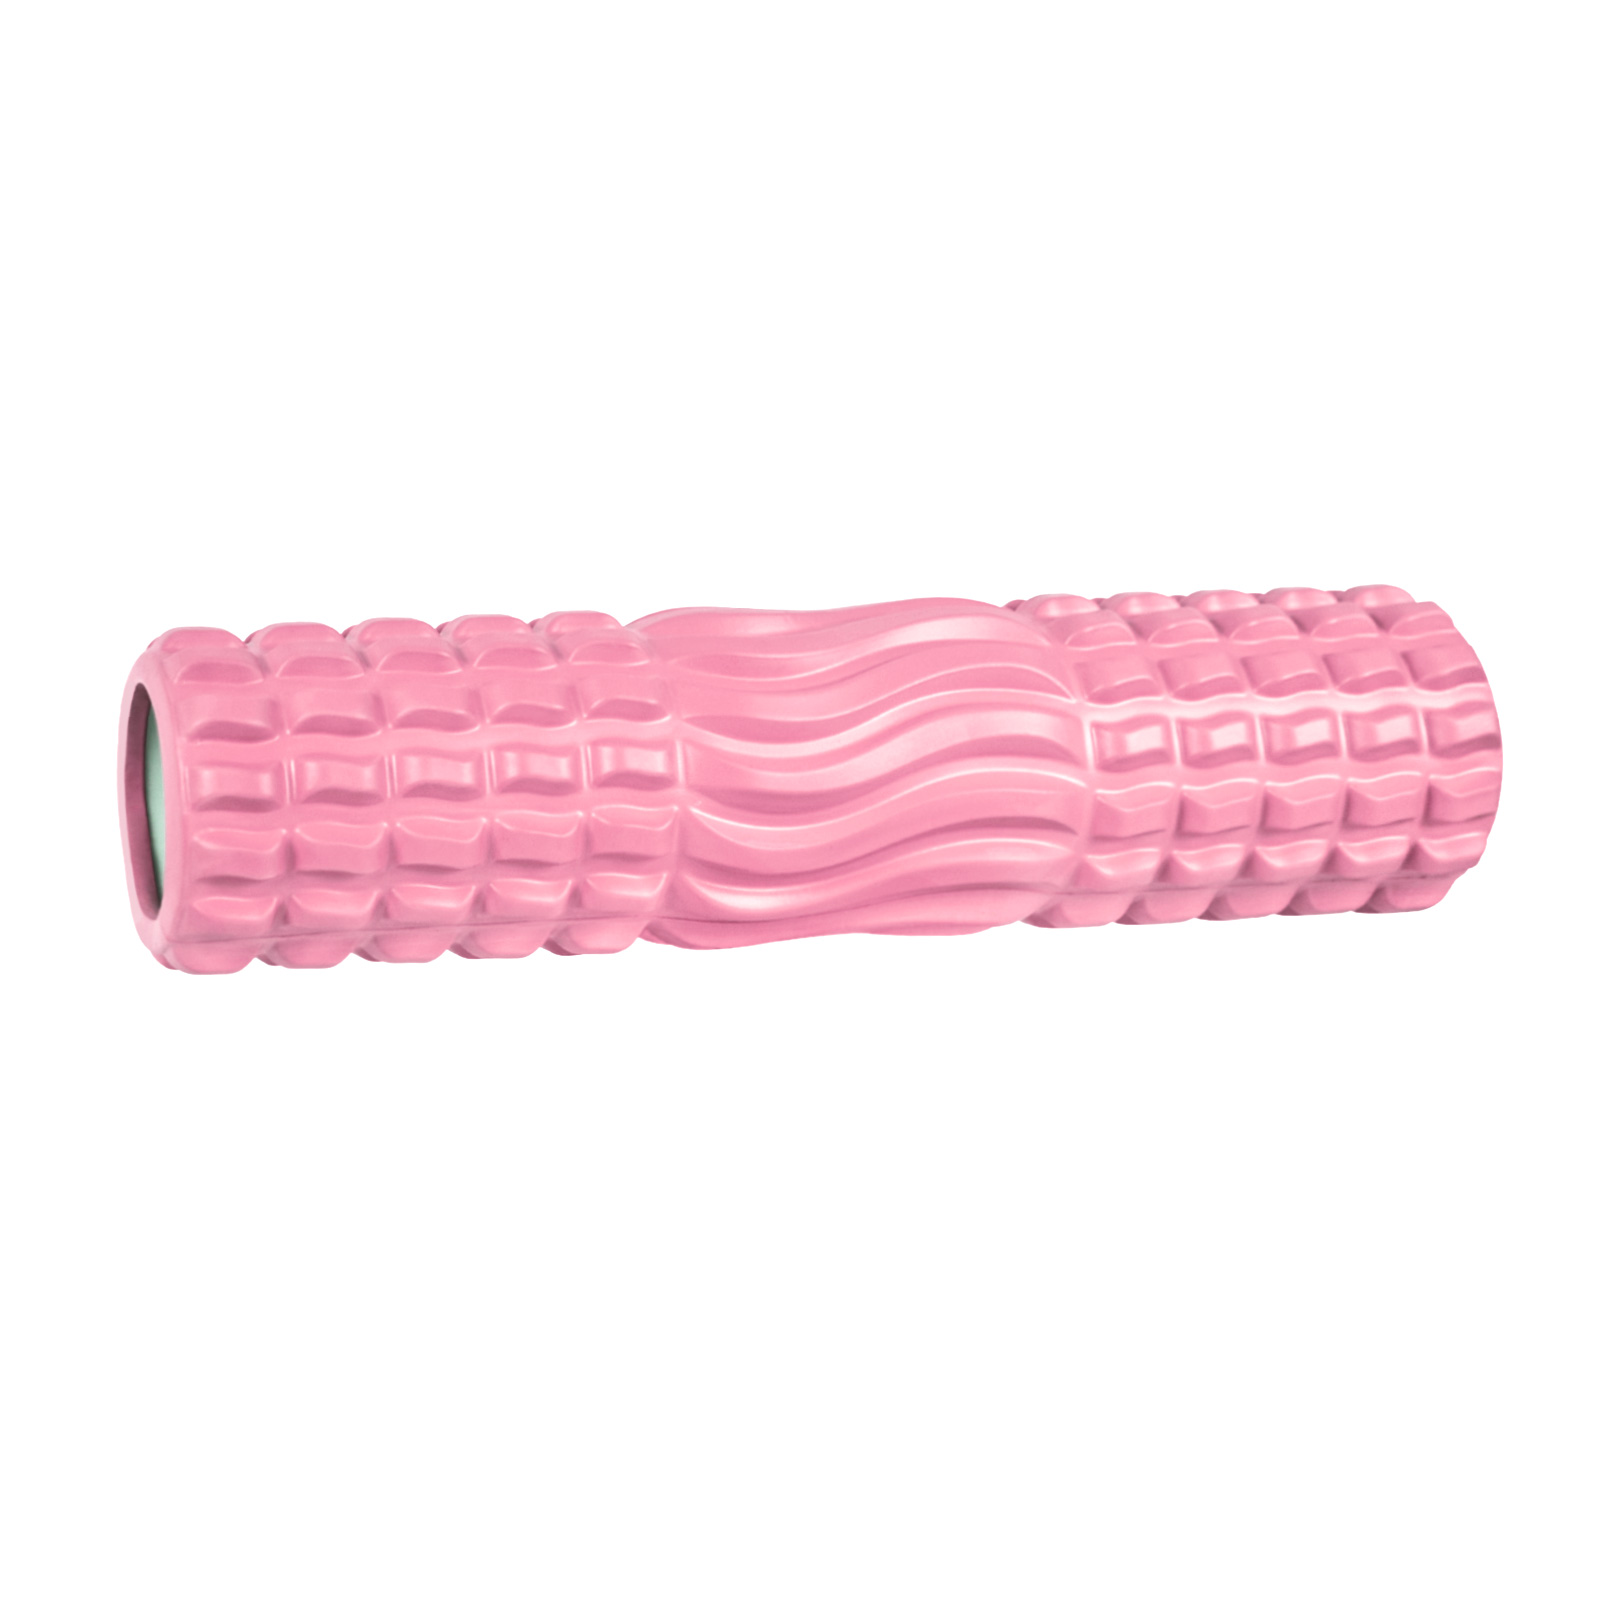 Ролик массажный для йоги CLIFF 45*12см, ВОЛНА, светло-розовый